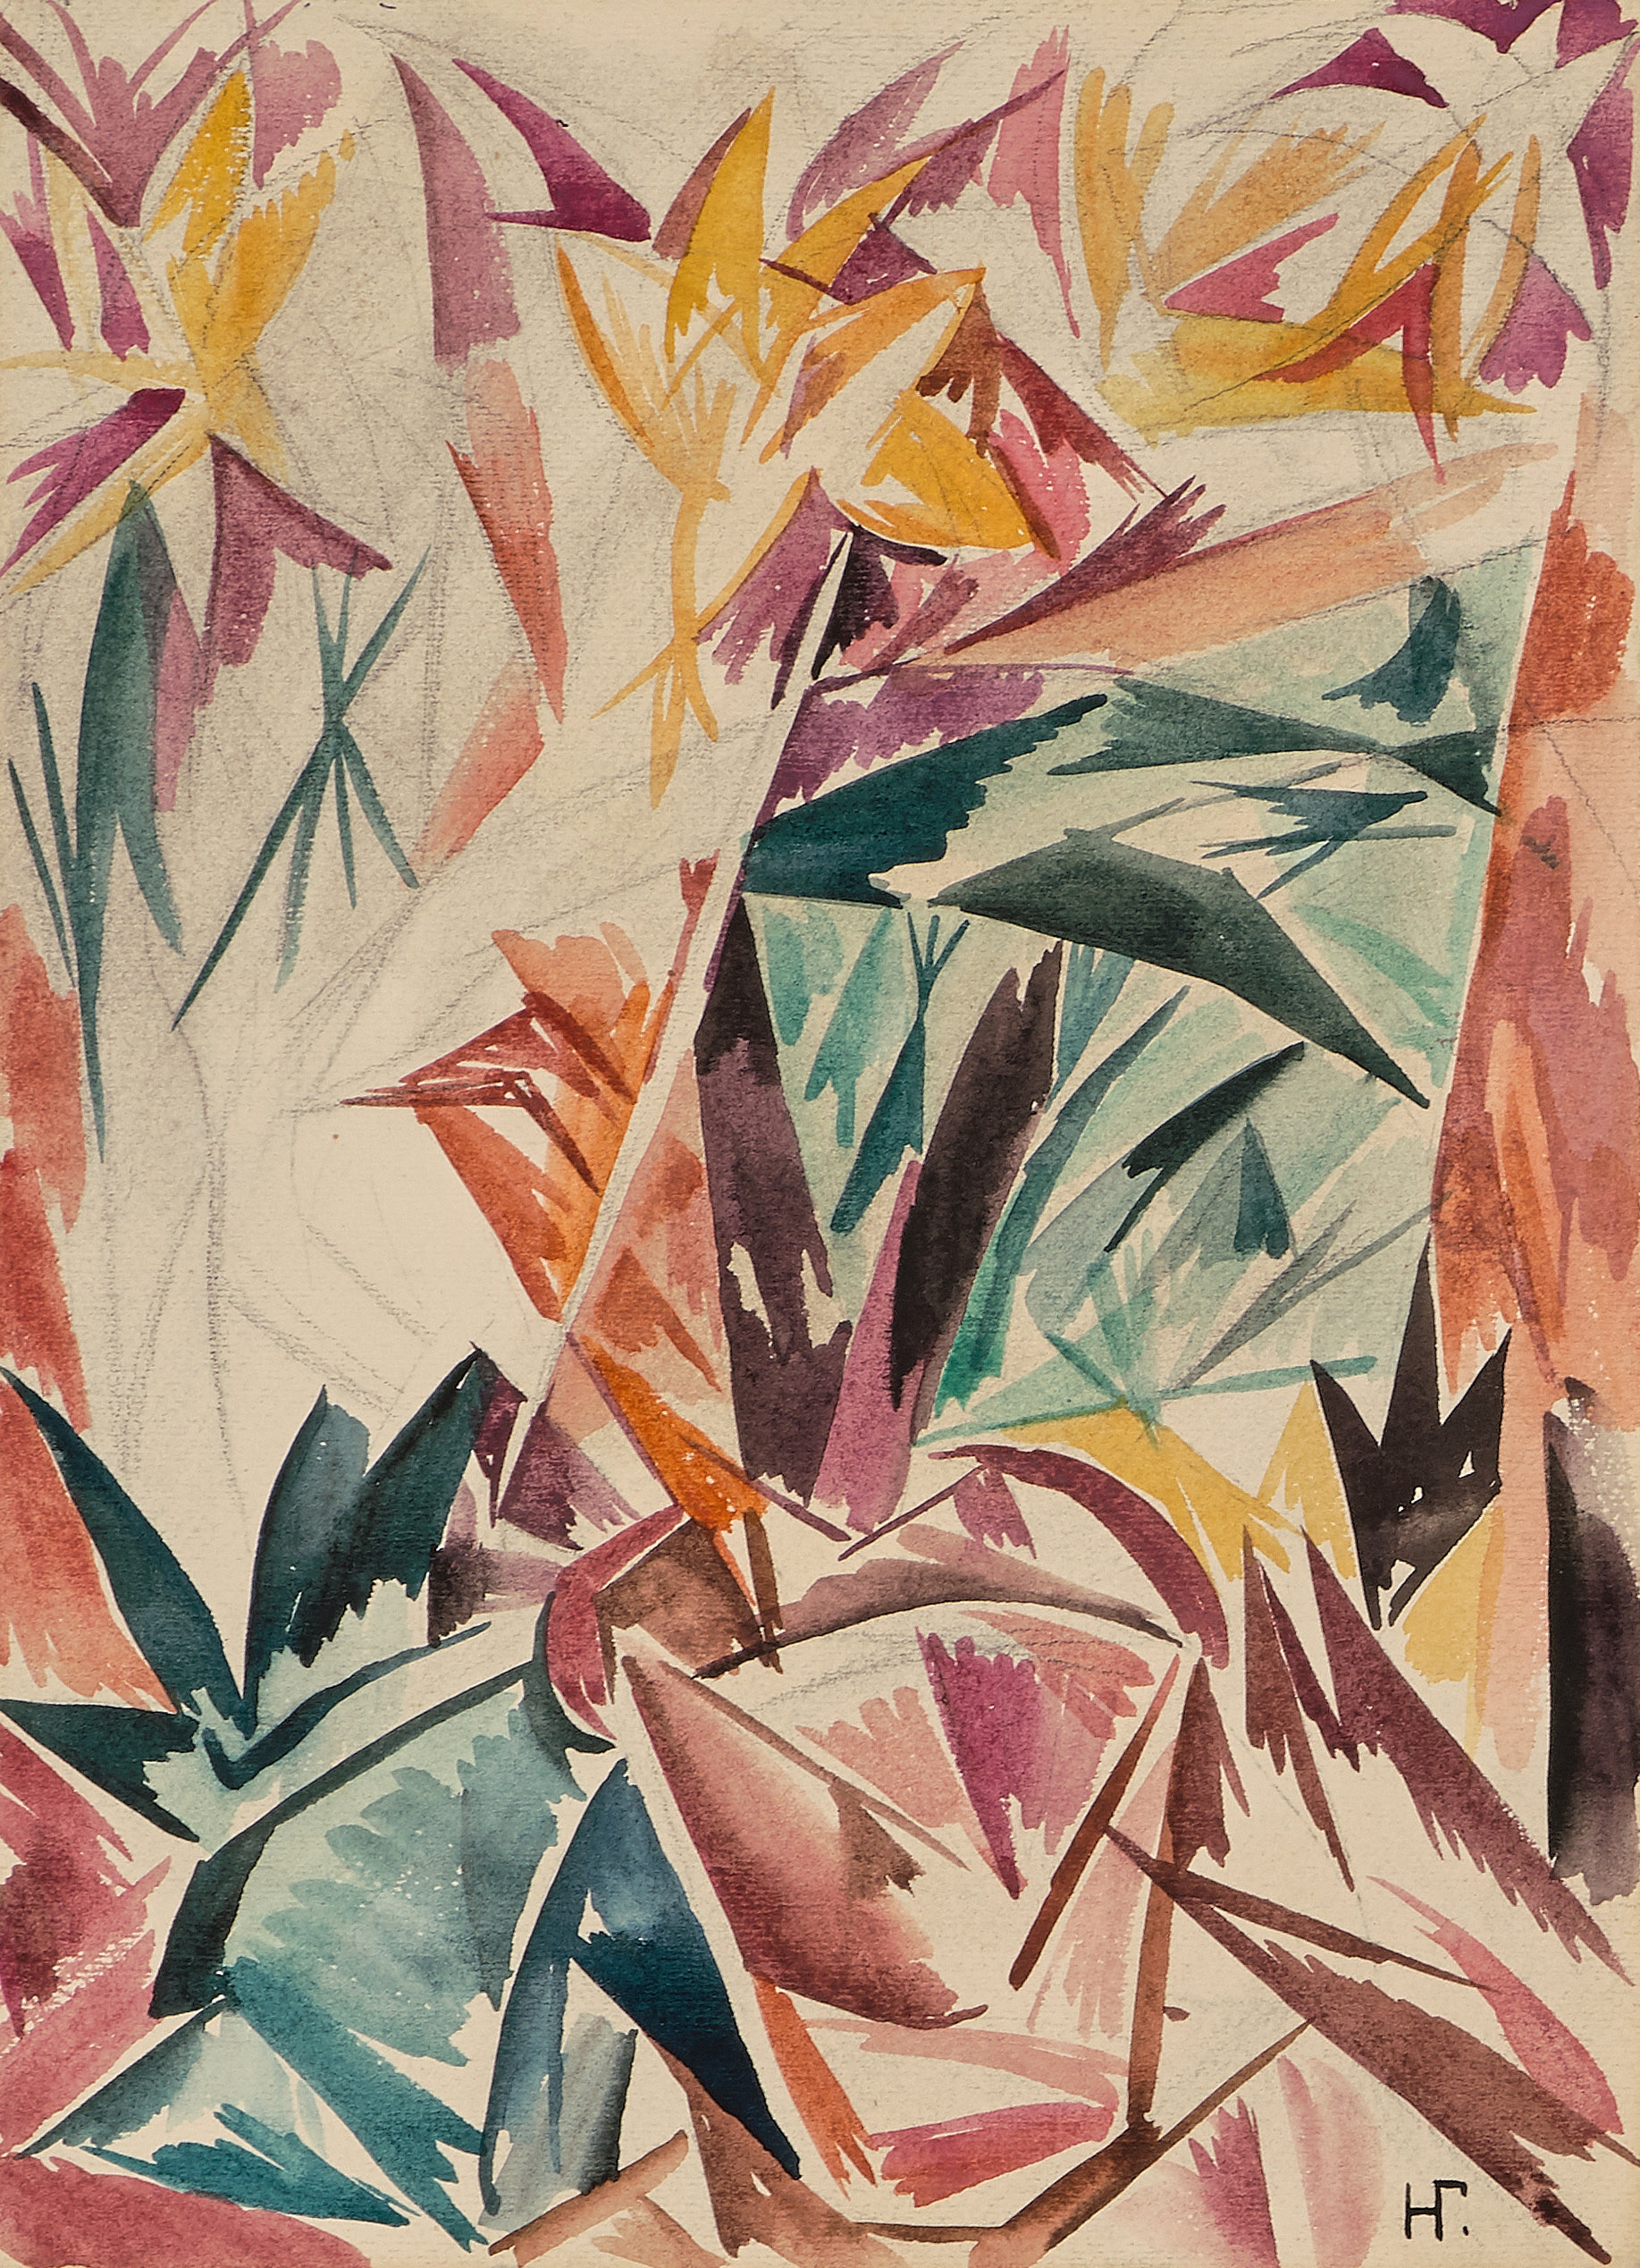 Forêt (étude pour la toile conservée au Musée de Perm) by Natalia Goncharova, 1913/1914